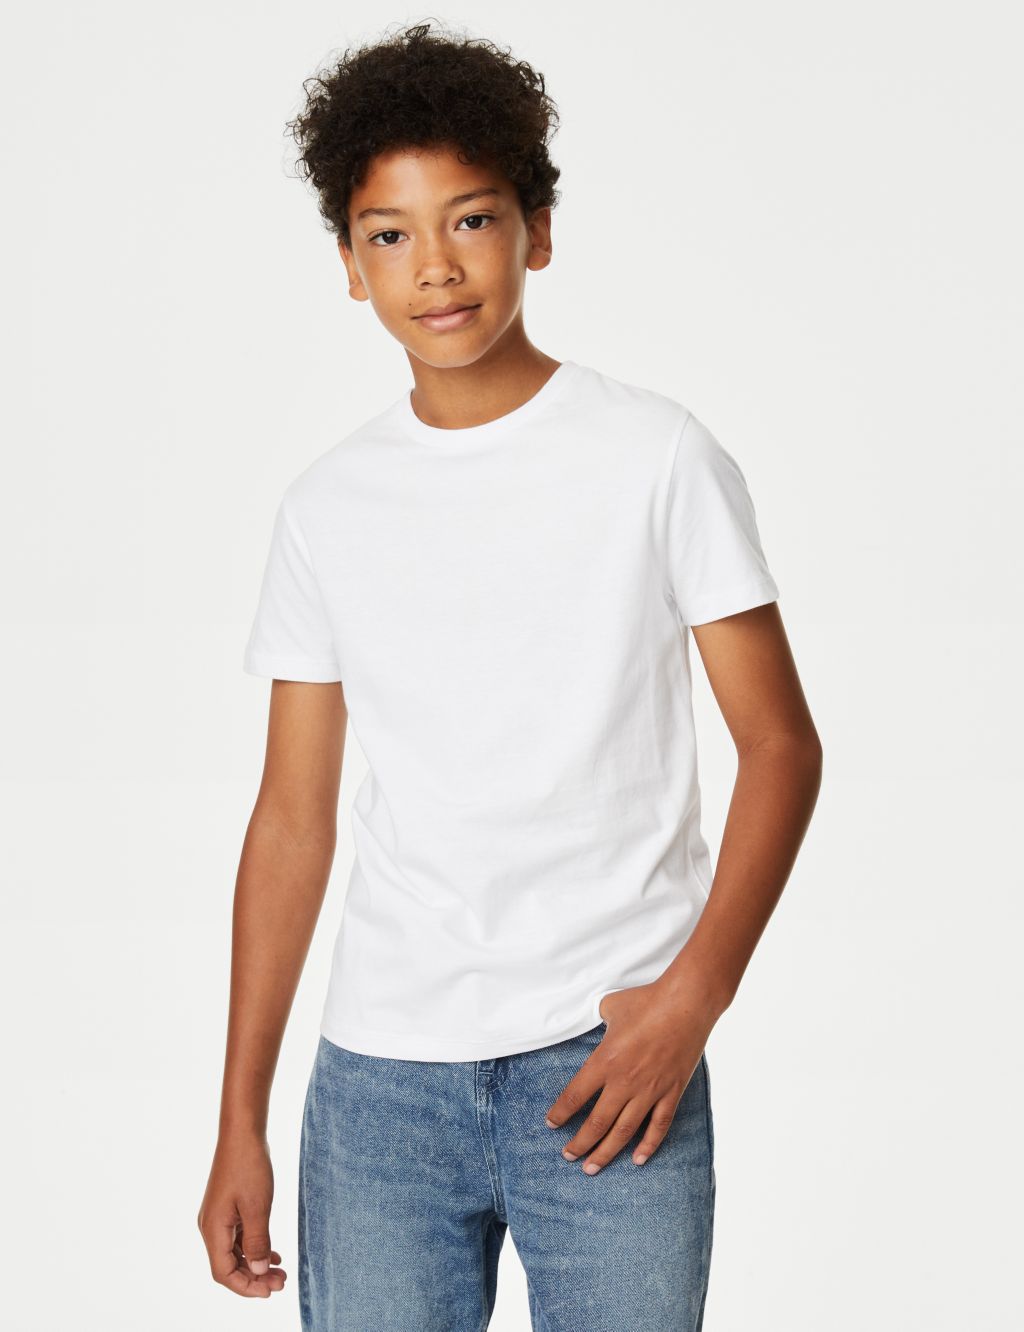 White, T-shirts